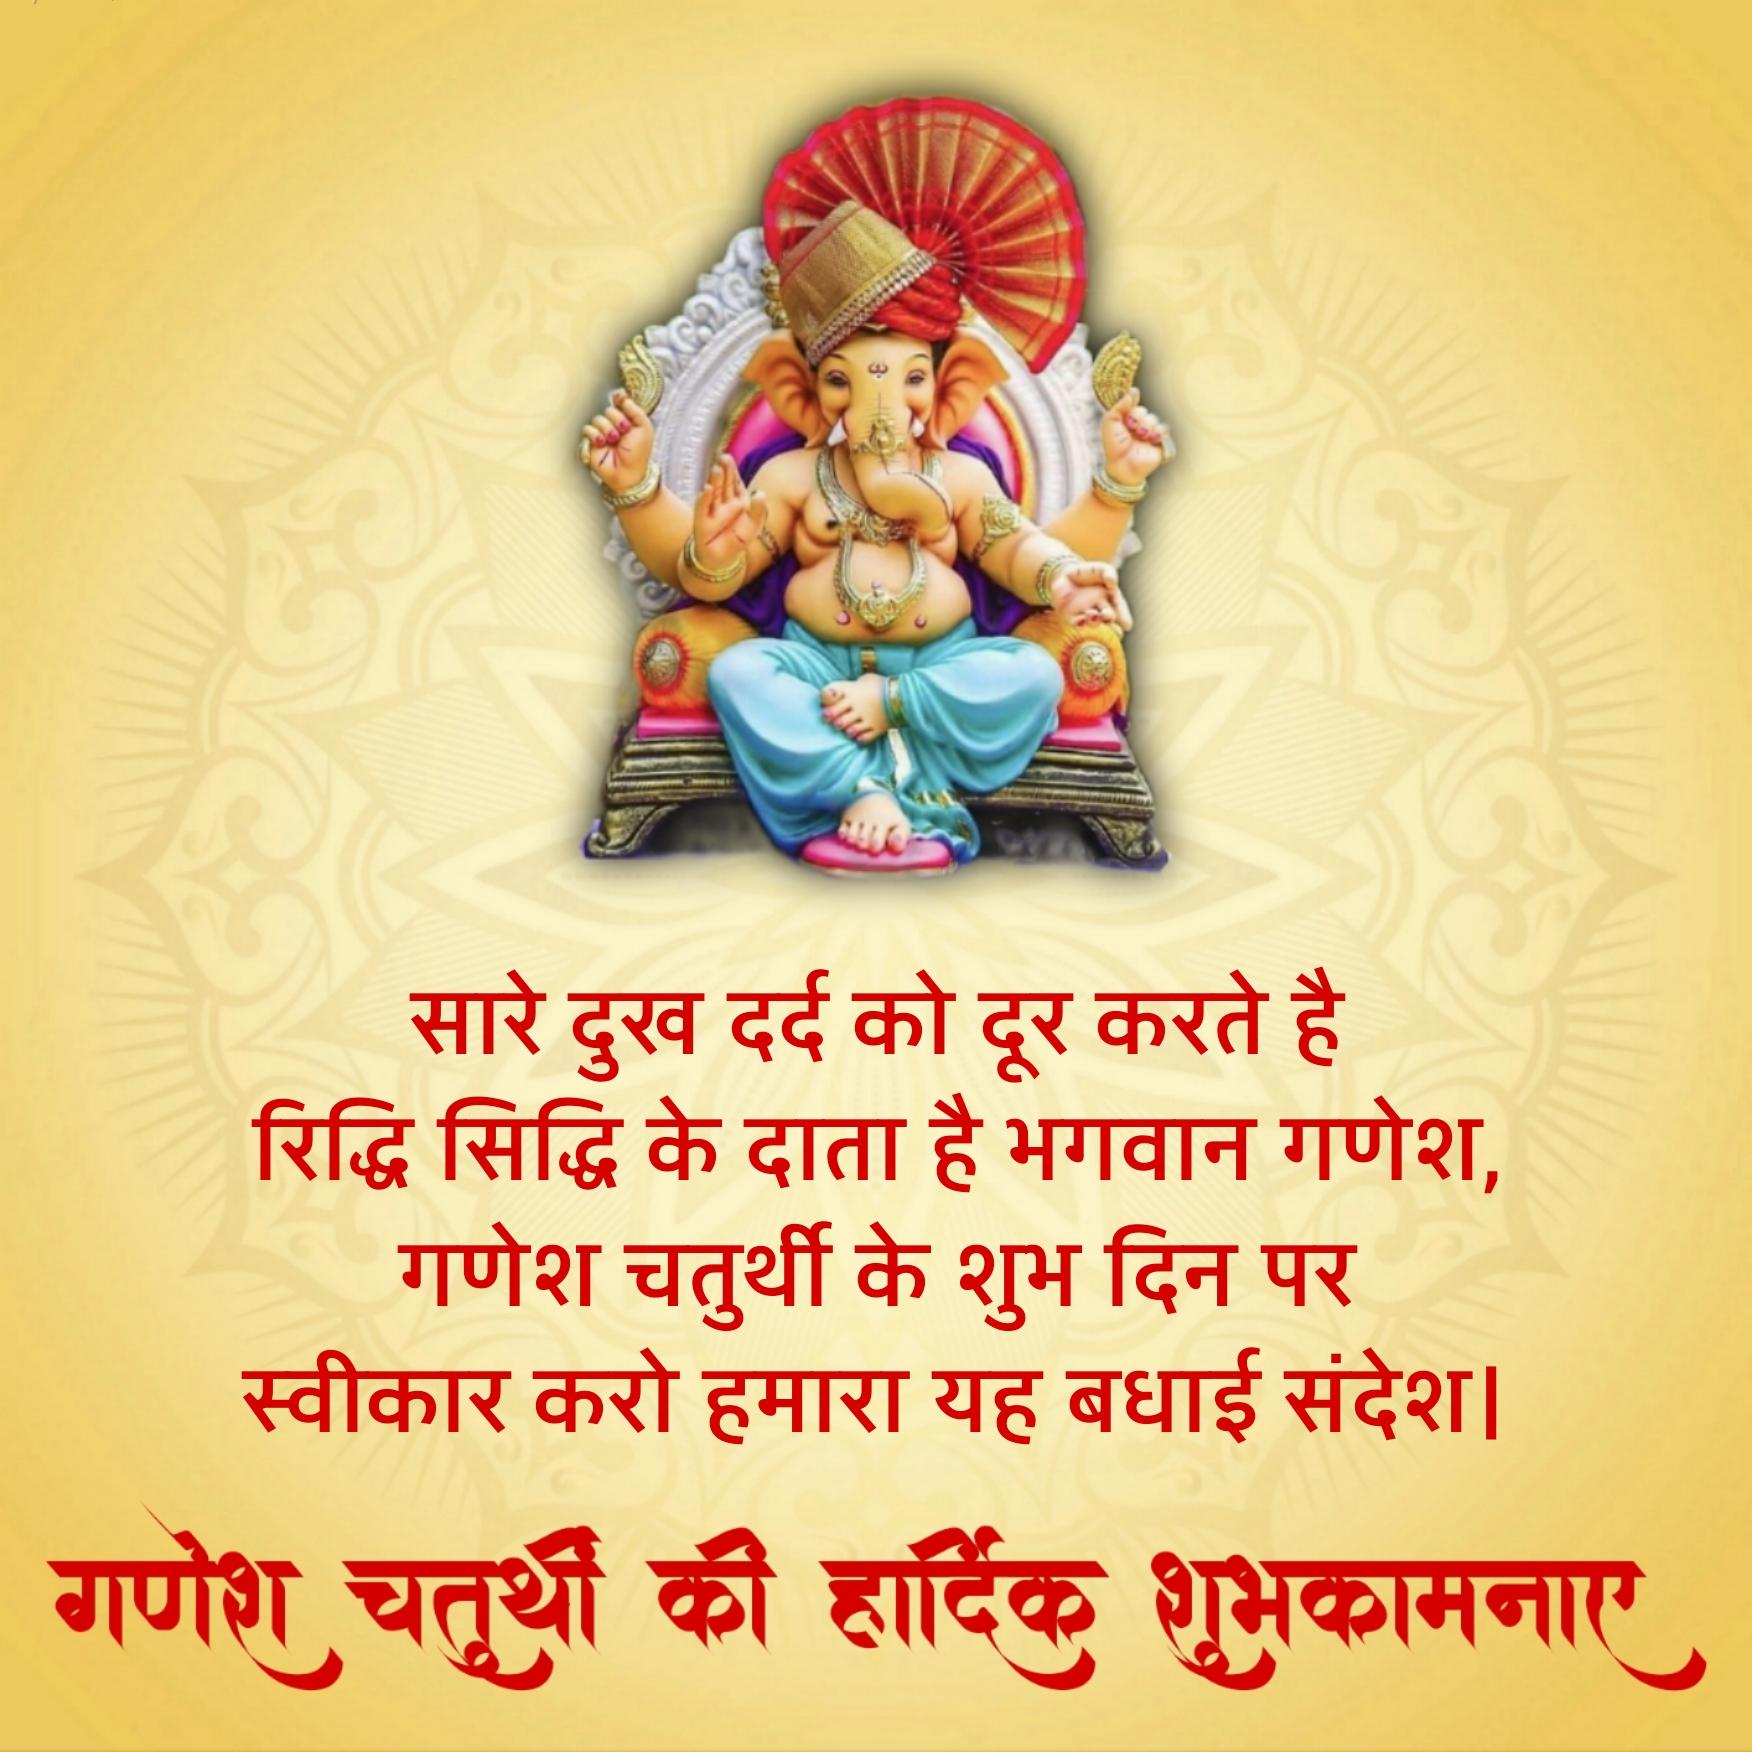 Happy Ganesh Chaturthi Wishes in Hindi - हैप्पी गणेश चतुर्थी विशेज इन हिंदी